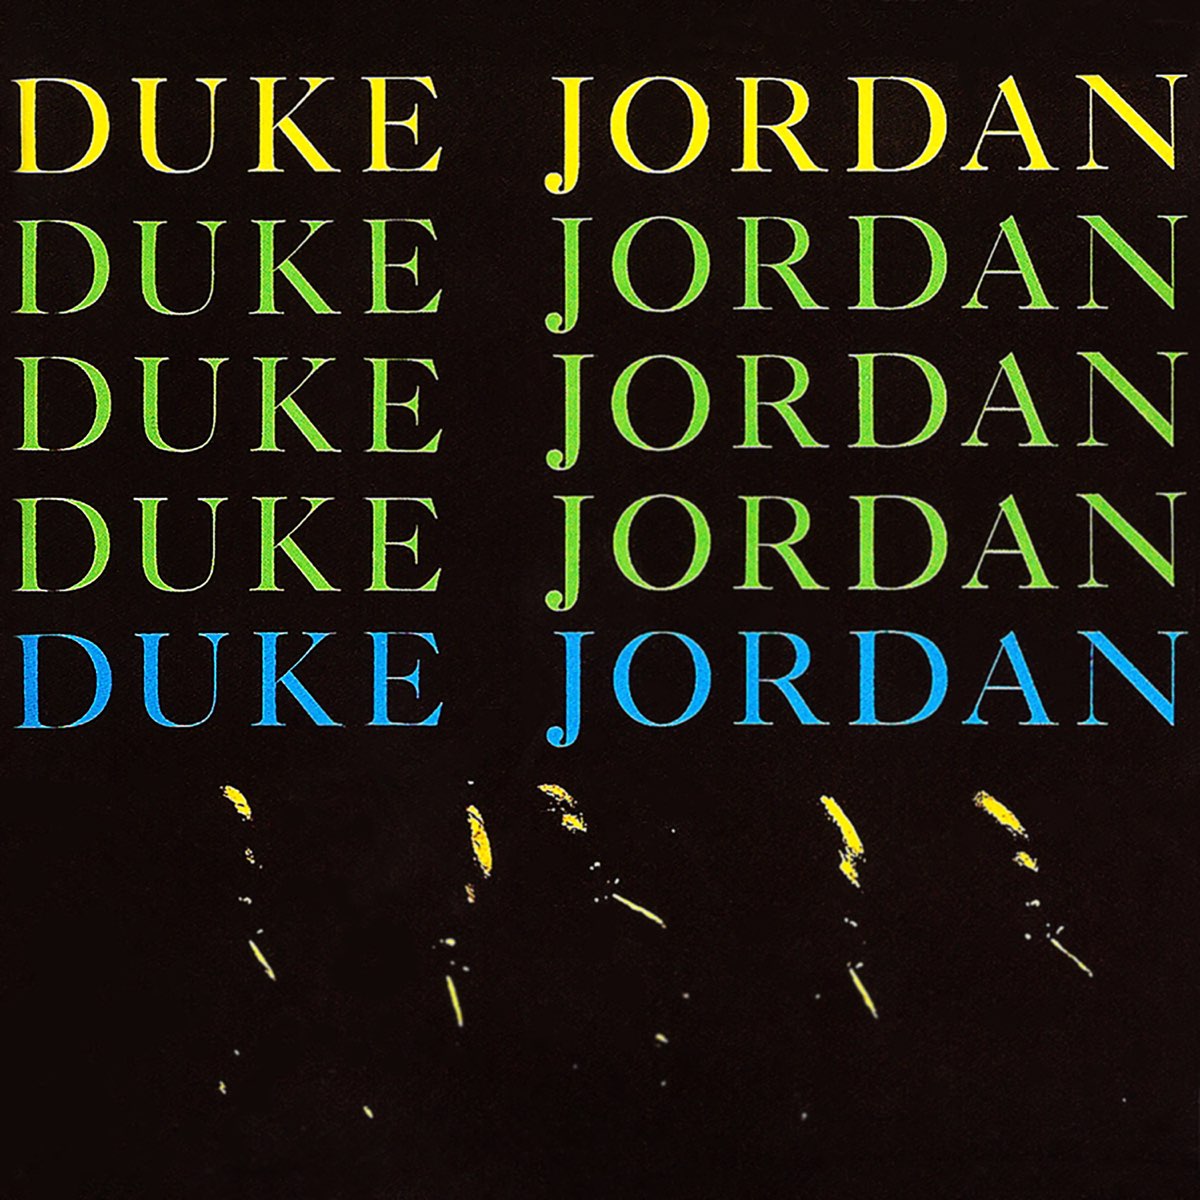 Duke Jordan Trio & Quintet by Duke Jordan on Apple Music